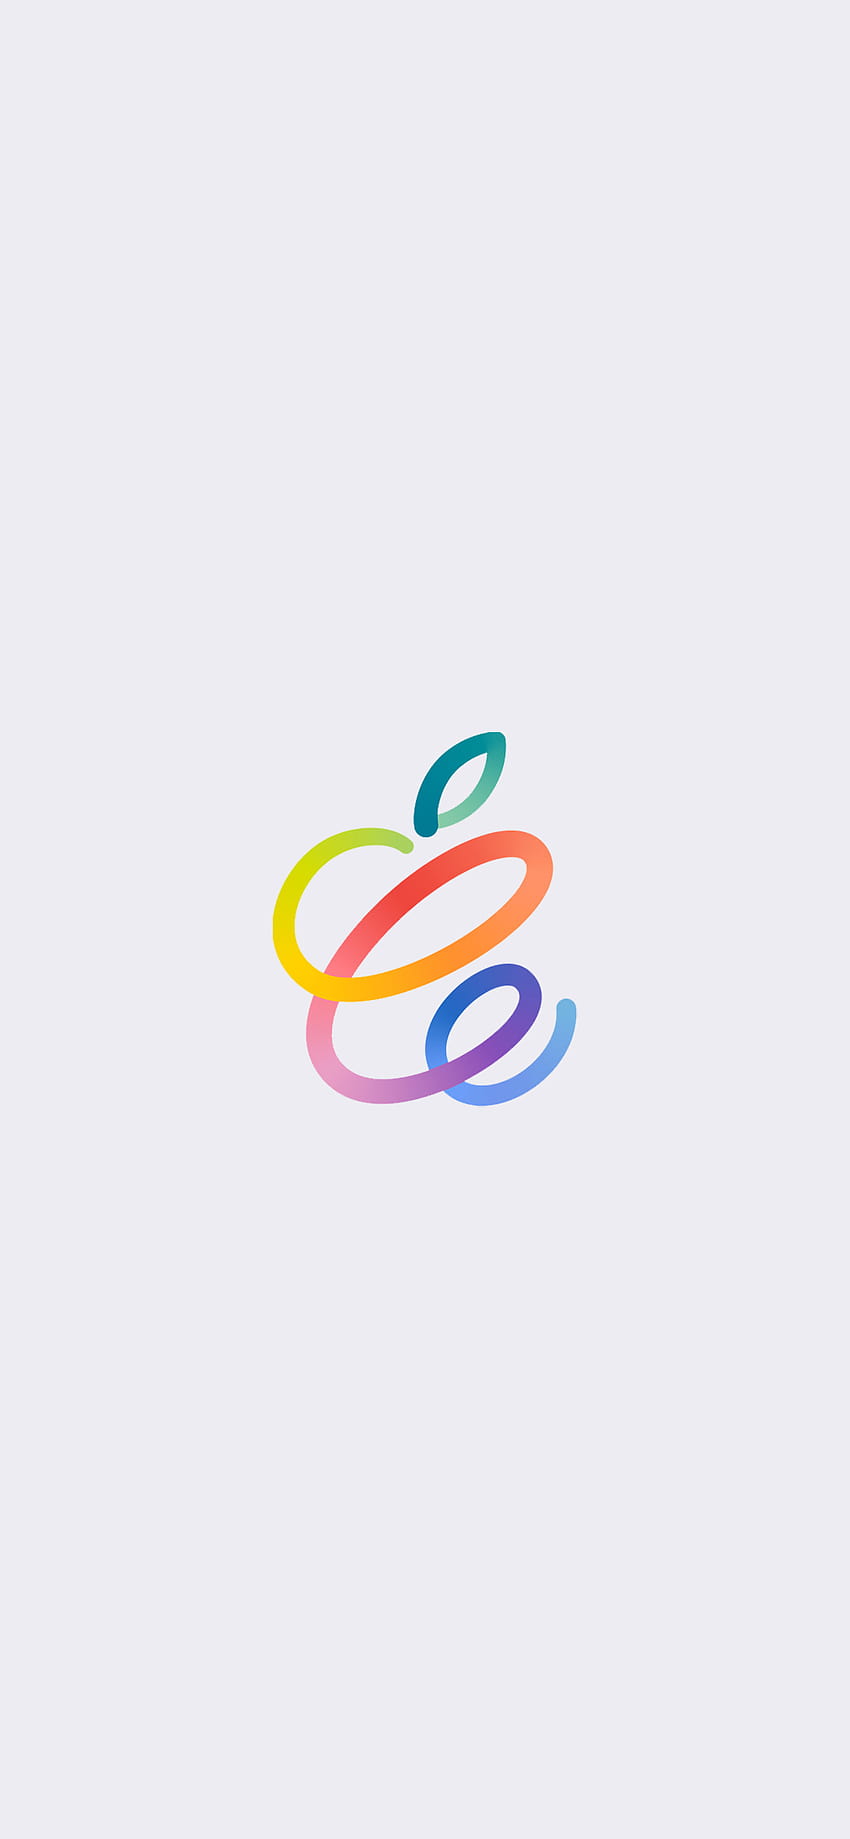 Evento Apple Spring Loaded para iPhone, iPad y Mac, logotipo de Apple iphone 12 pro max fondo de pantalla del teléfono